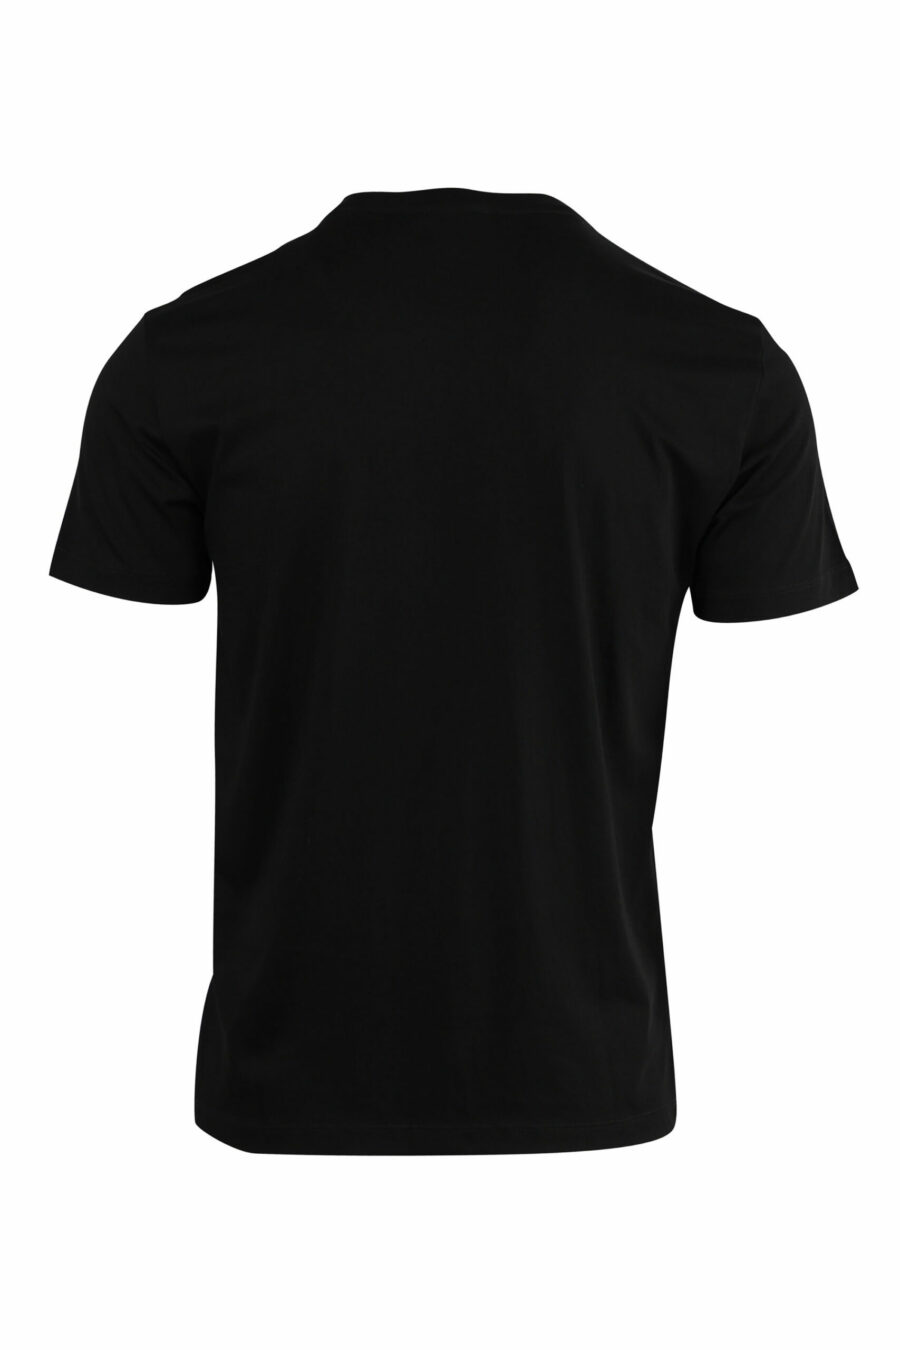 T-shirt noir avec mini-logo doré "lux identity" - 8057767515805 2 à l'échelle